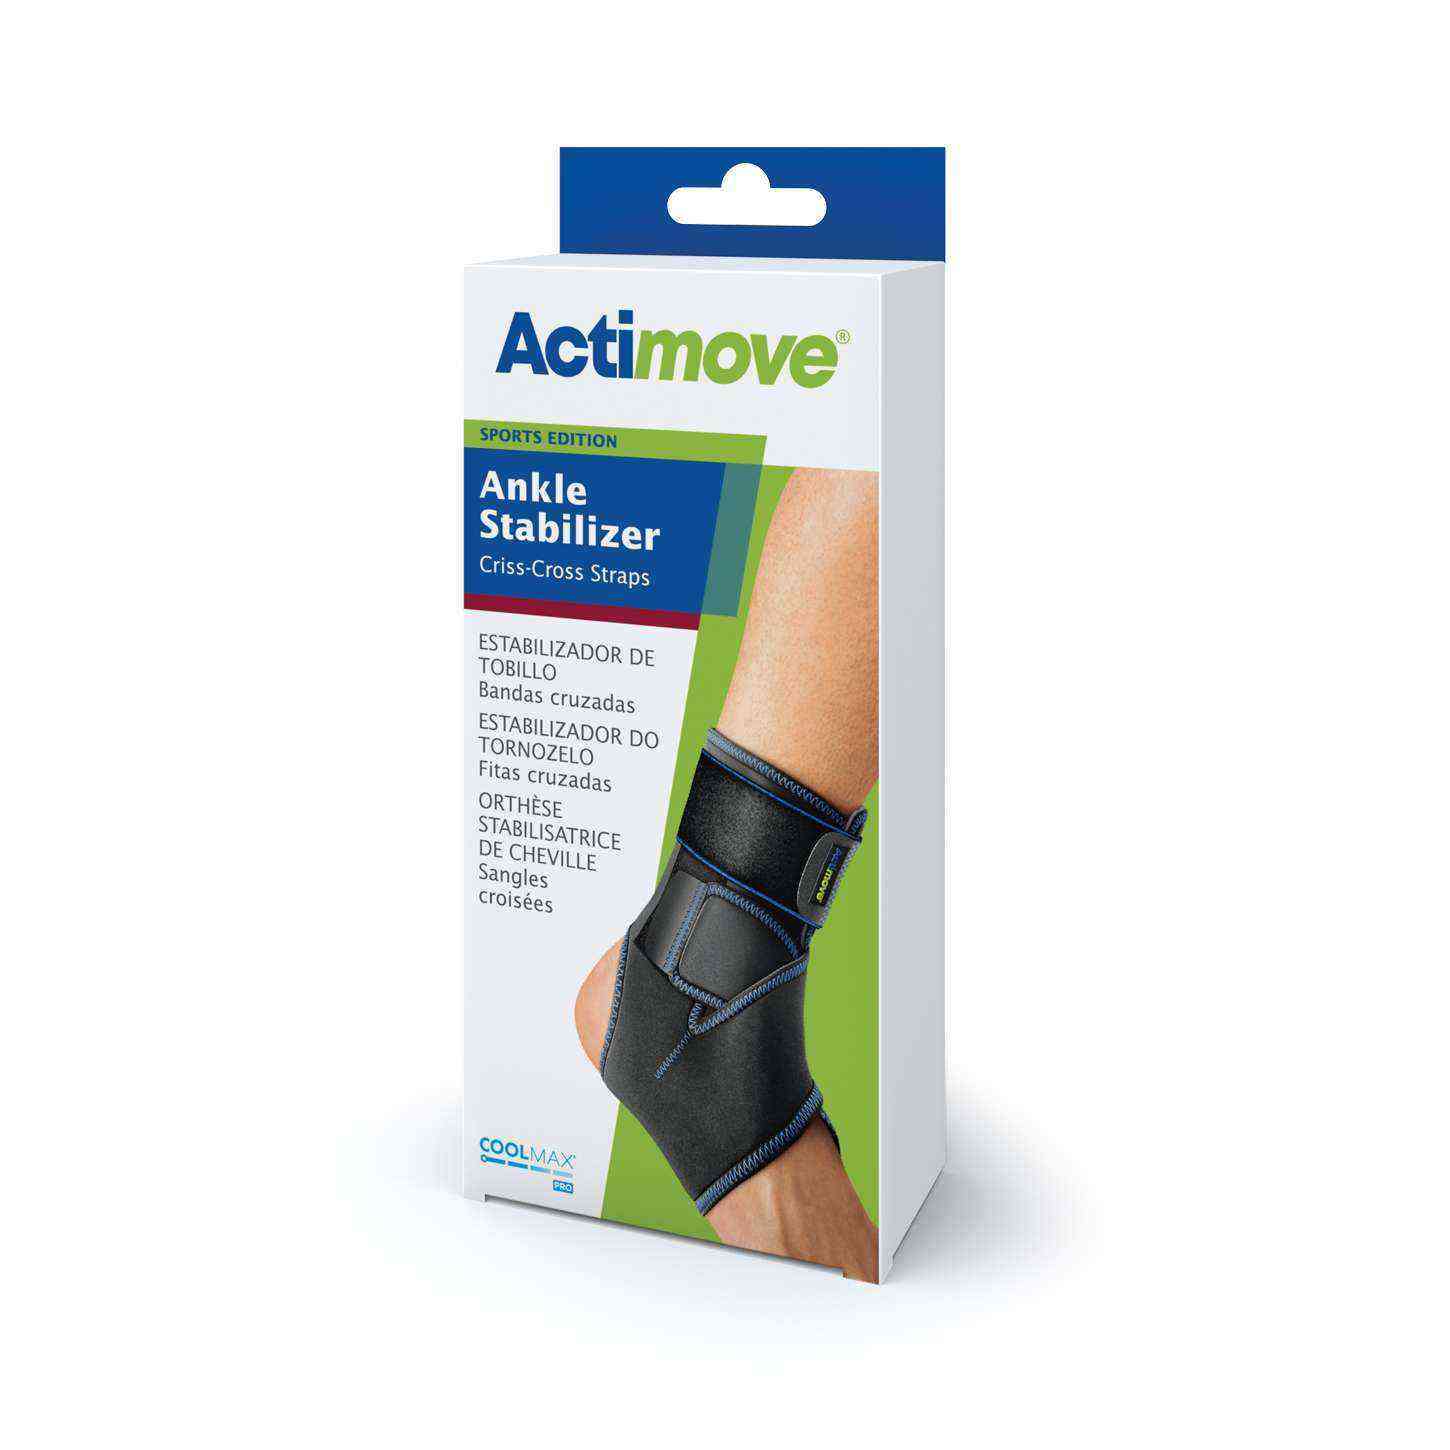 Actimove Ankle Stabilizer Coolmax Ayak Bileği Sabitleyici Çapraz Bantlı  Standart